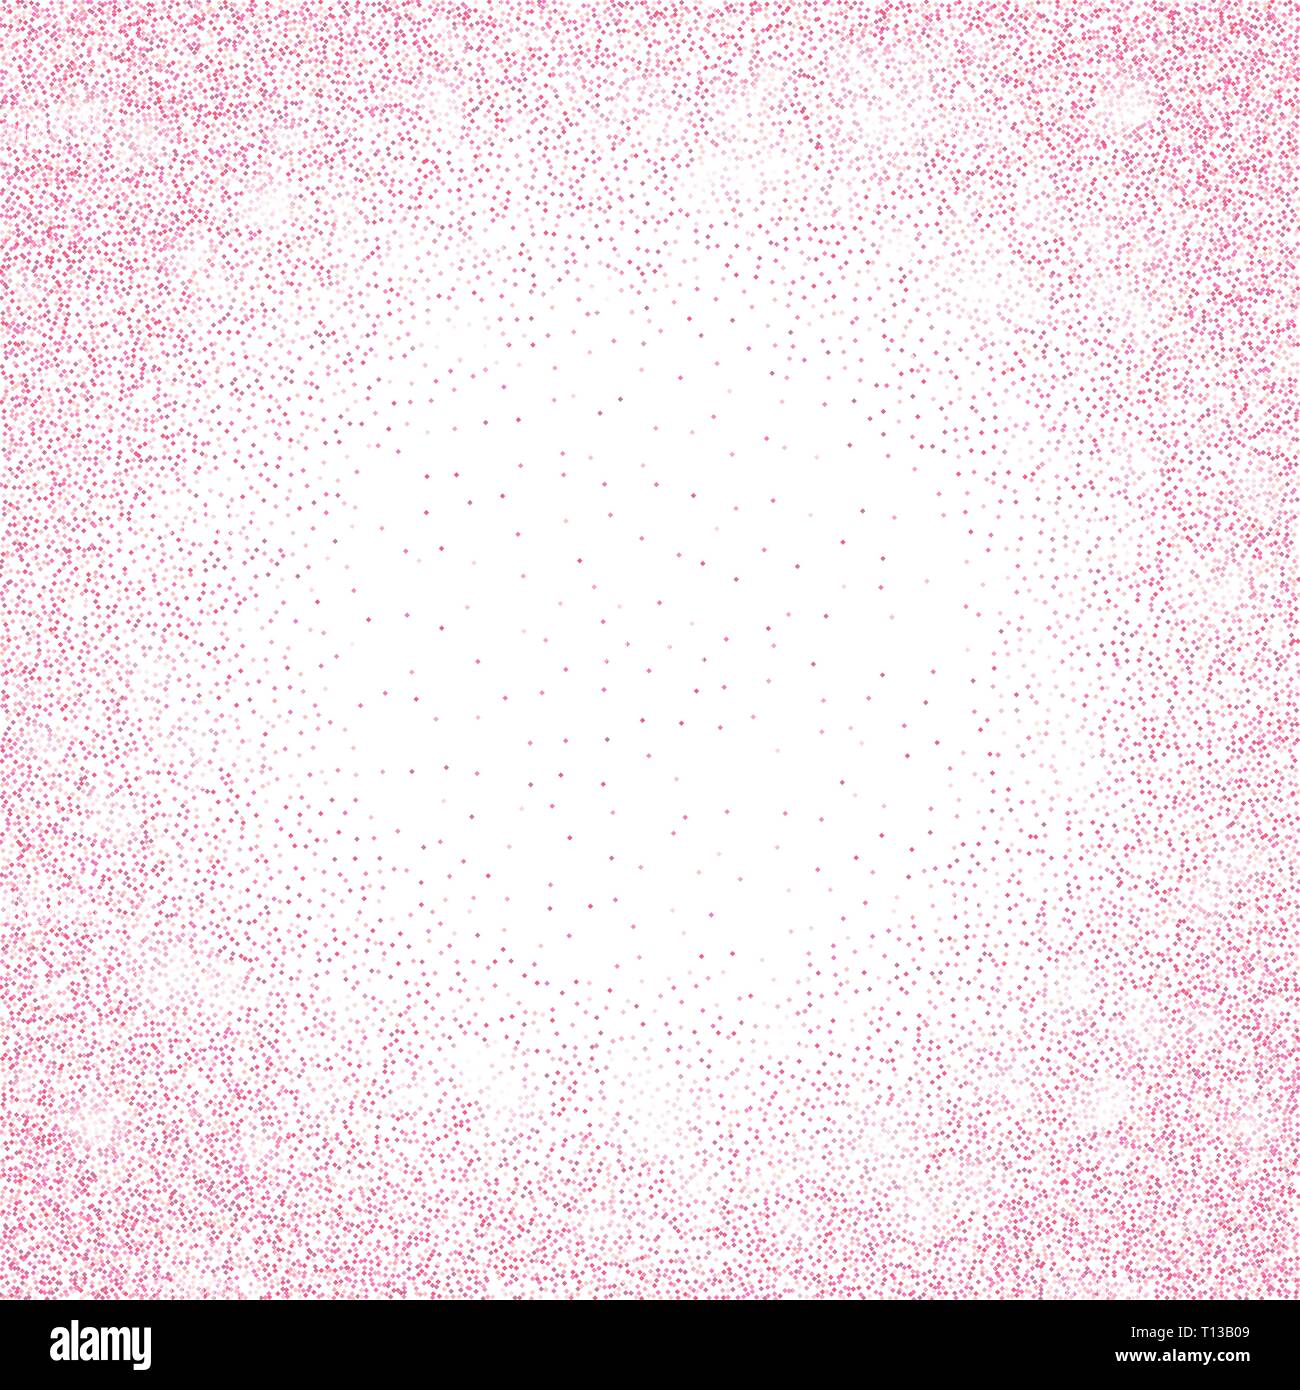 Pink Glitter Sparkle On A Transparent Background Rose Gold Vibrant Backgrou...